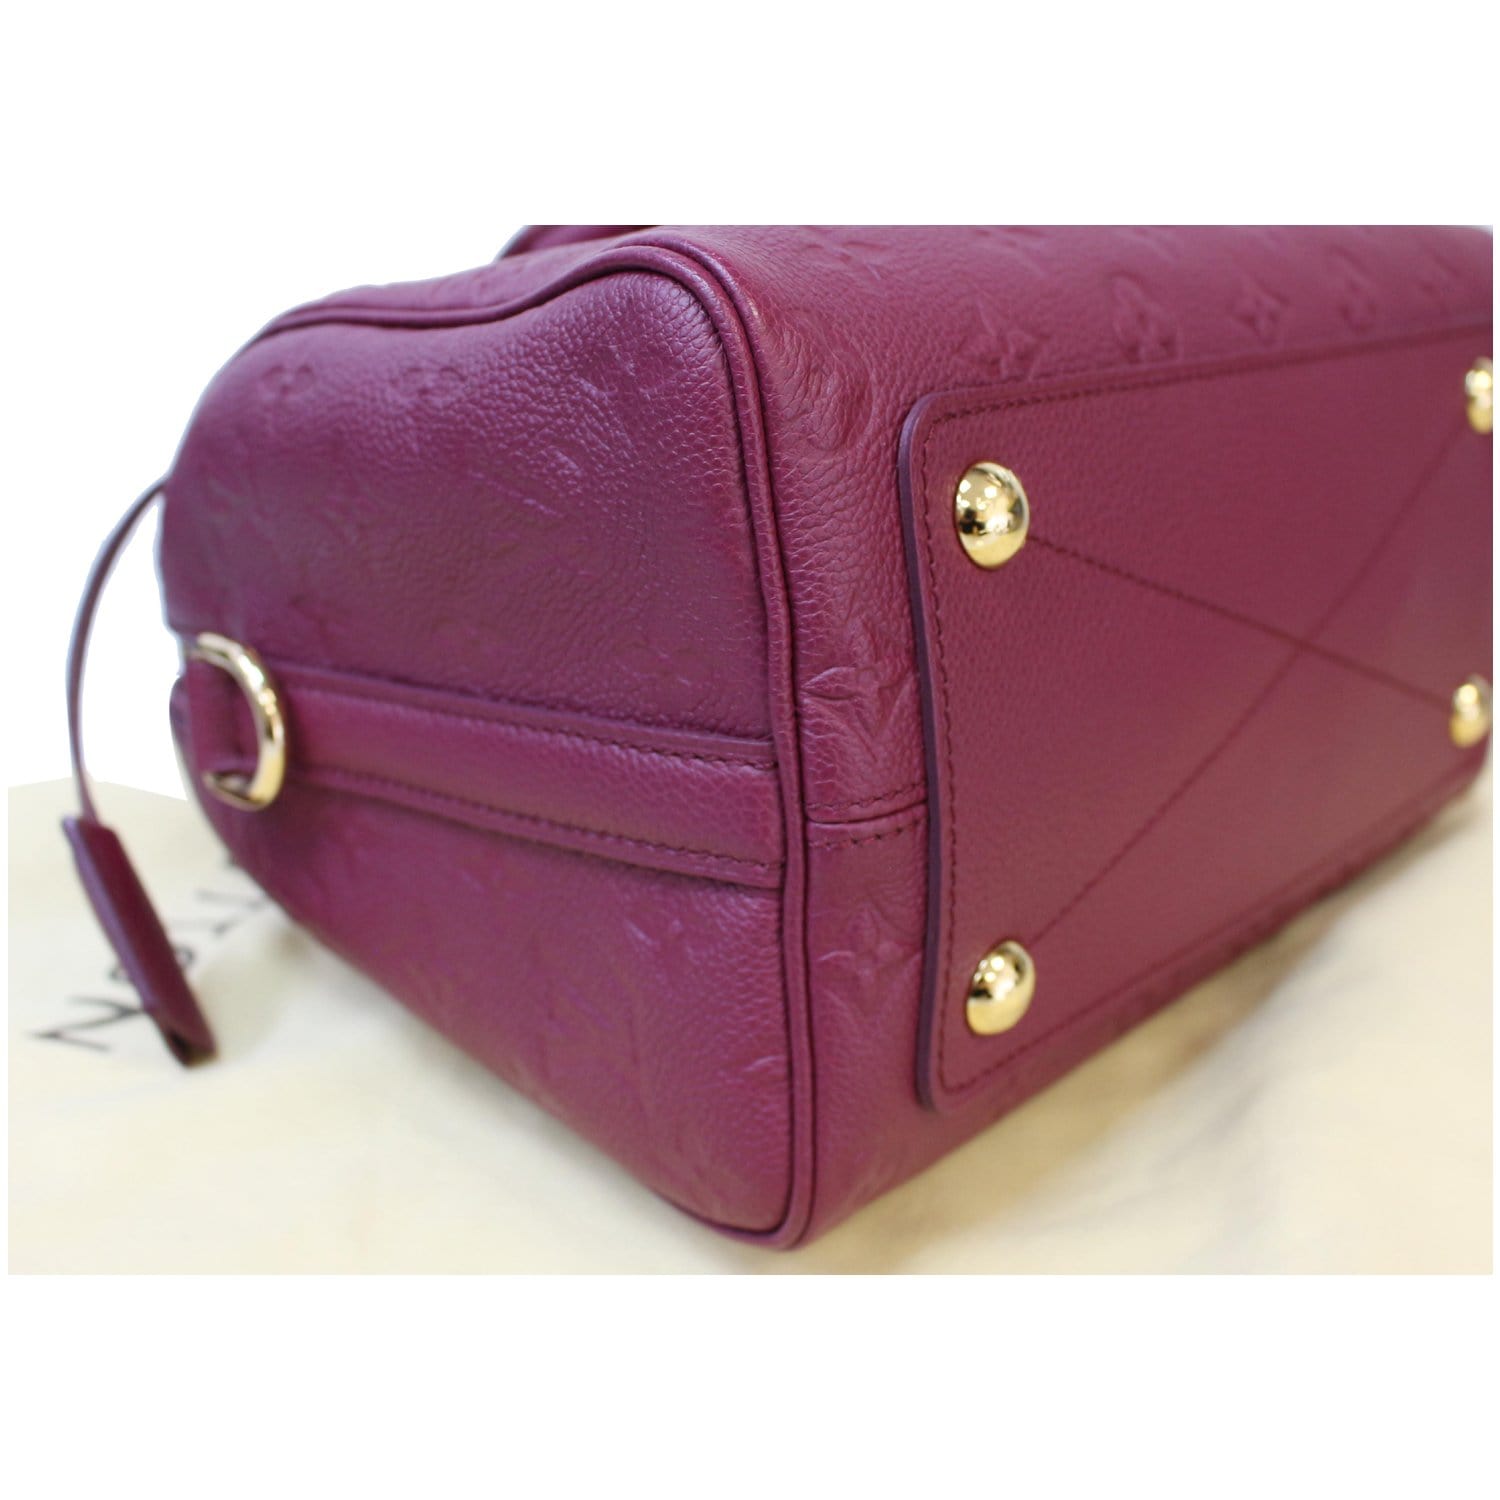 Louis Vuitton Monogram Empreinte Speedy 25 Bandouliere Pink Leather Handbag